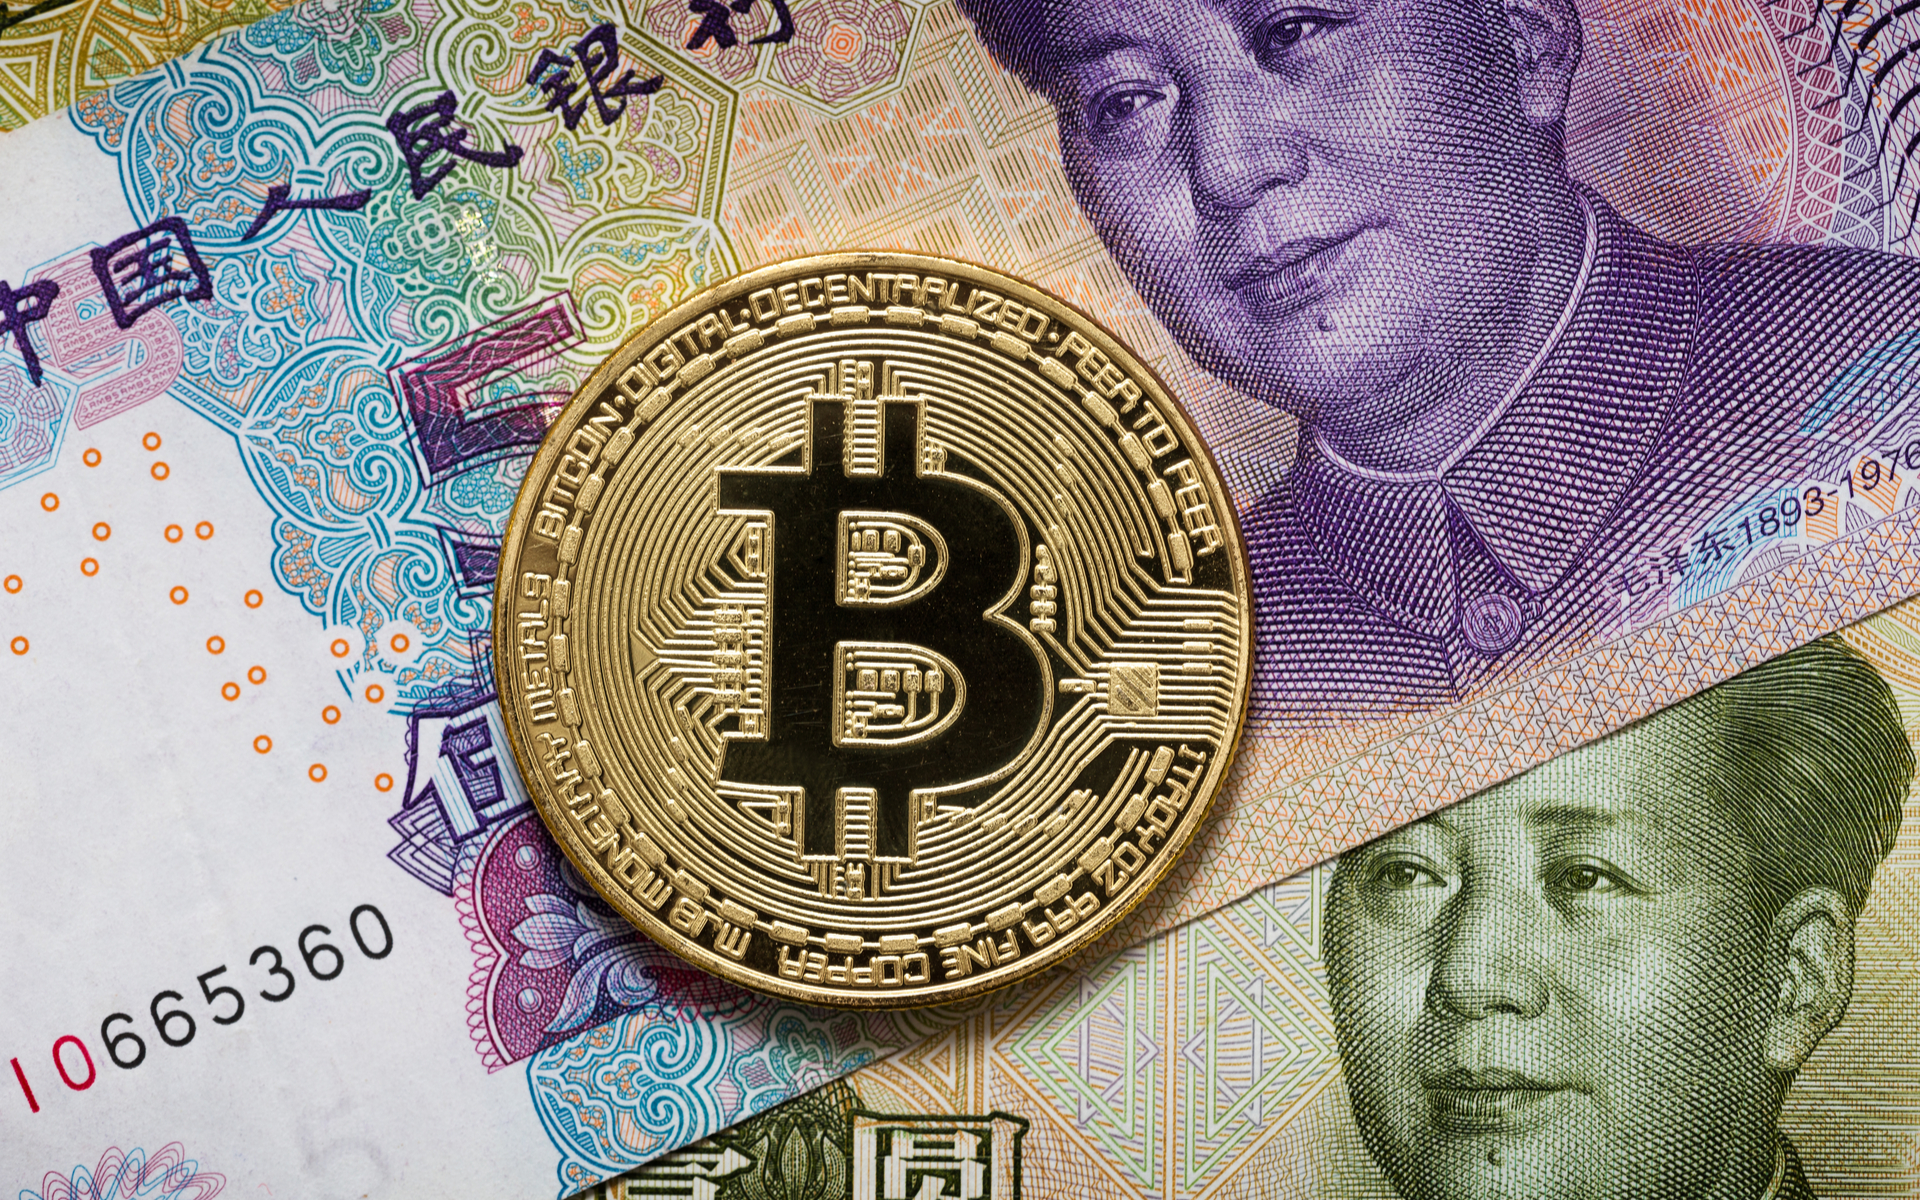 Chinese yuan bitcoin https buy bitcoin com review